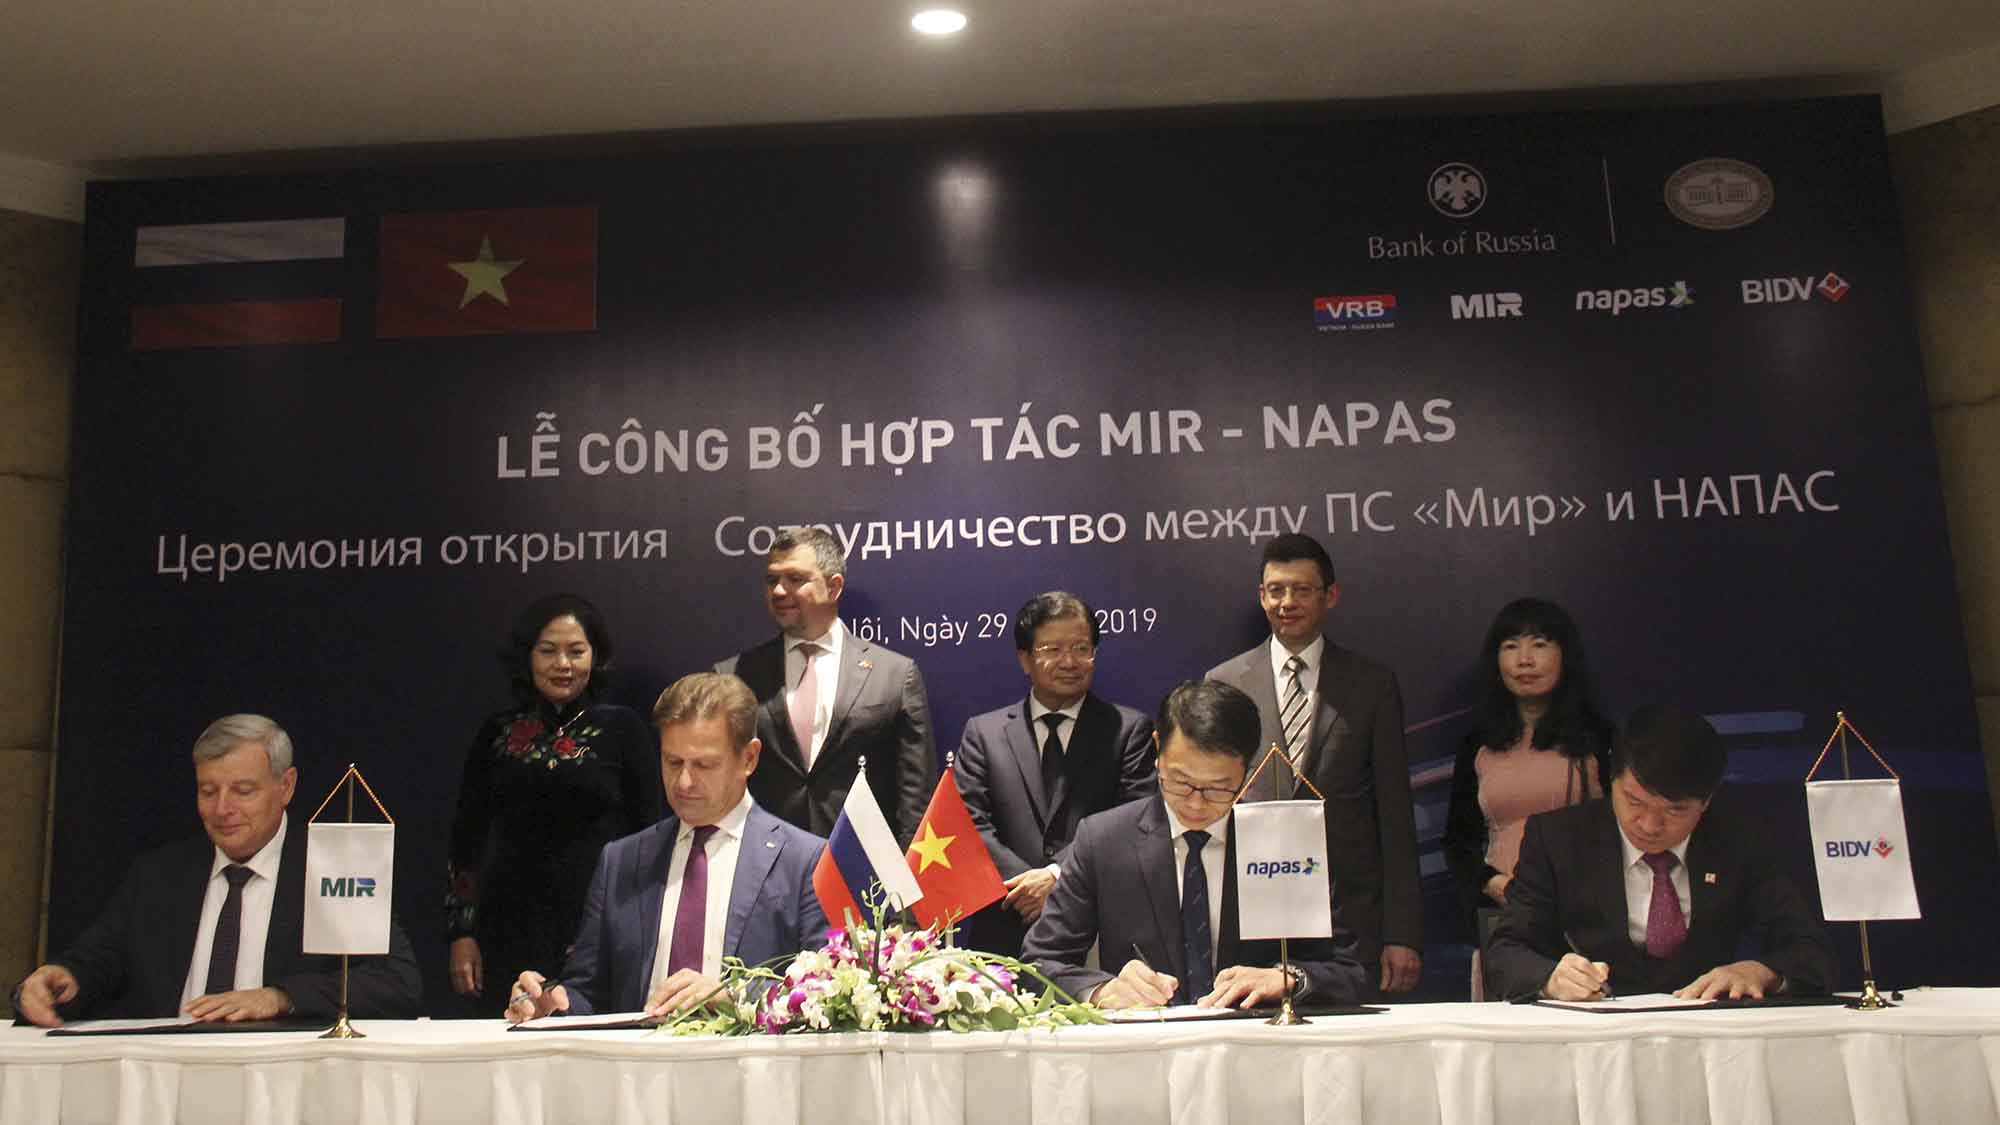 Khoá họp lần thứ 22 Uỷ ban liên Chính phủ (UBLCP)Việt Nam - Liên bang Nga 